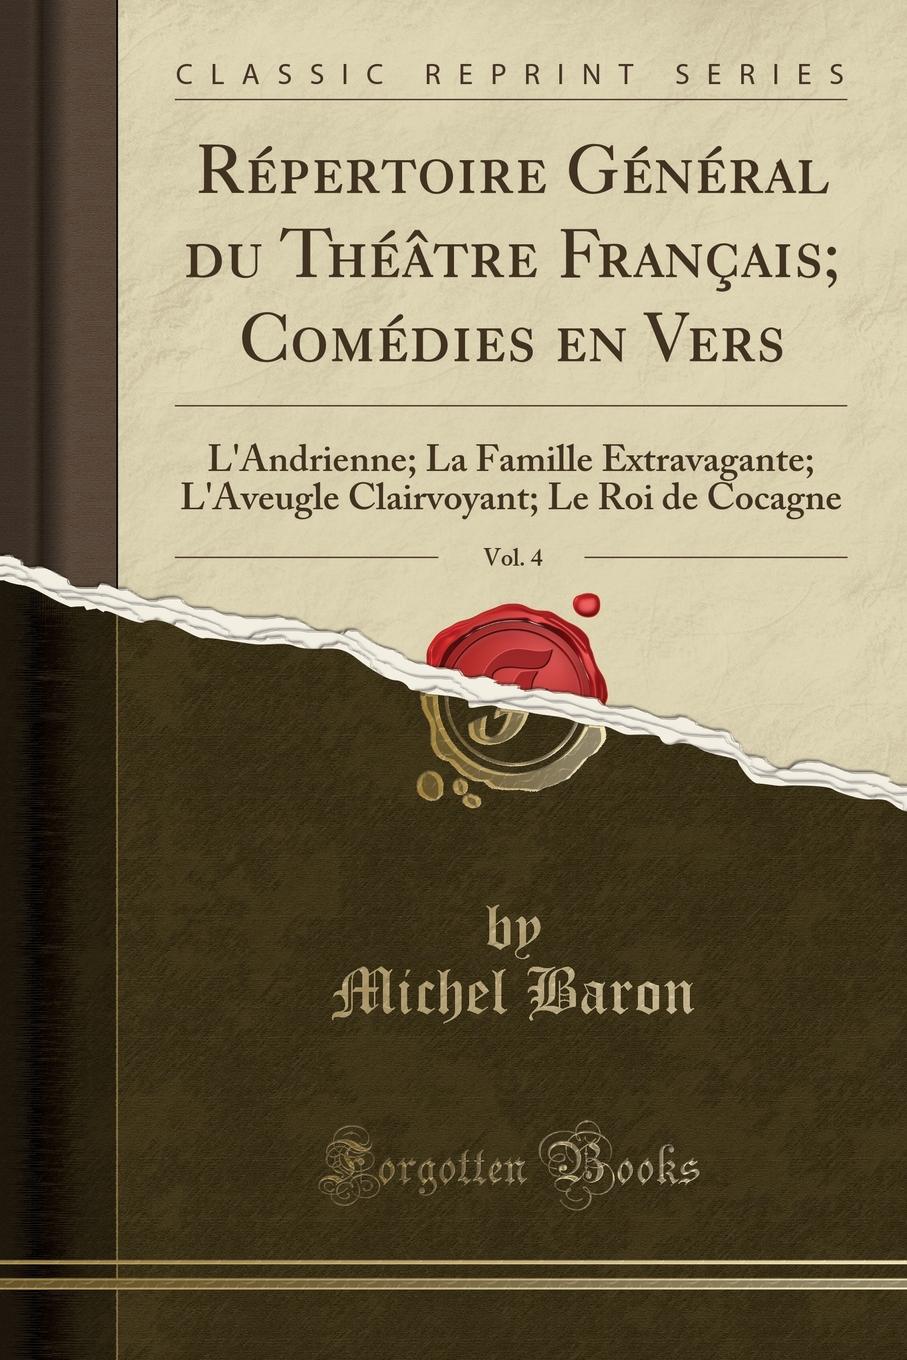 Repertoire General du Theatre Francais; Comedies en Vers, Vol. 4. L.Andrienne; La Famille Extravagante; L.Aveugle Clairvoyant; Le Roi de Cocagne (Classic Reprint)